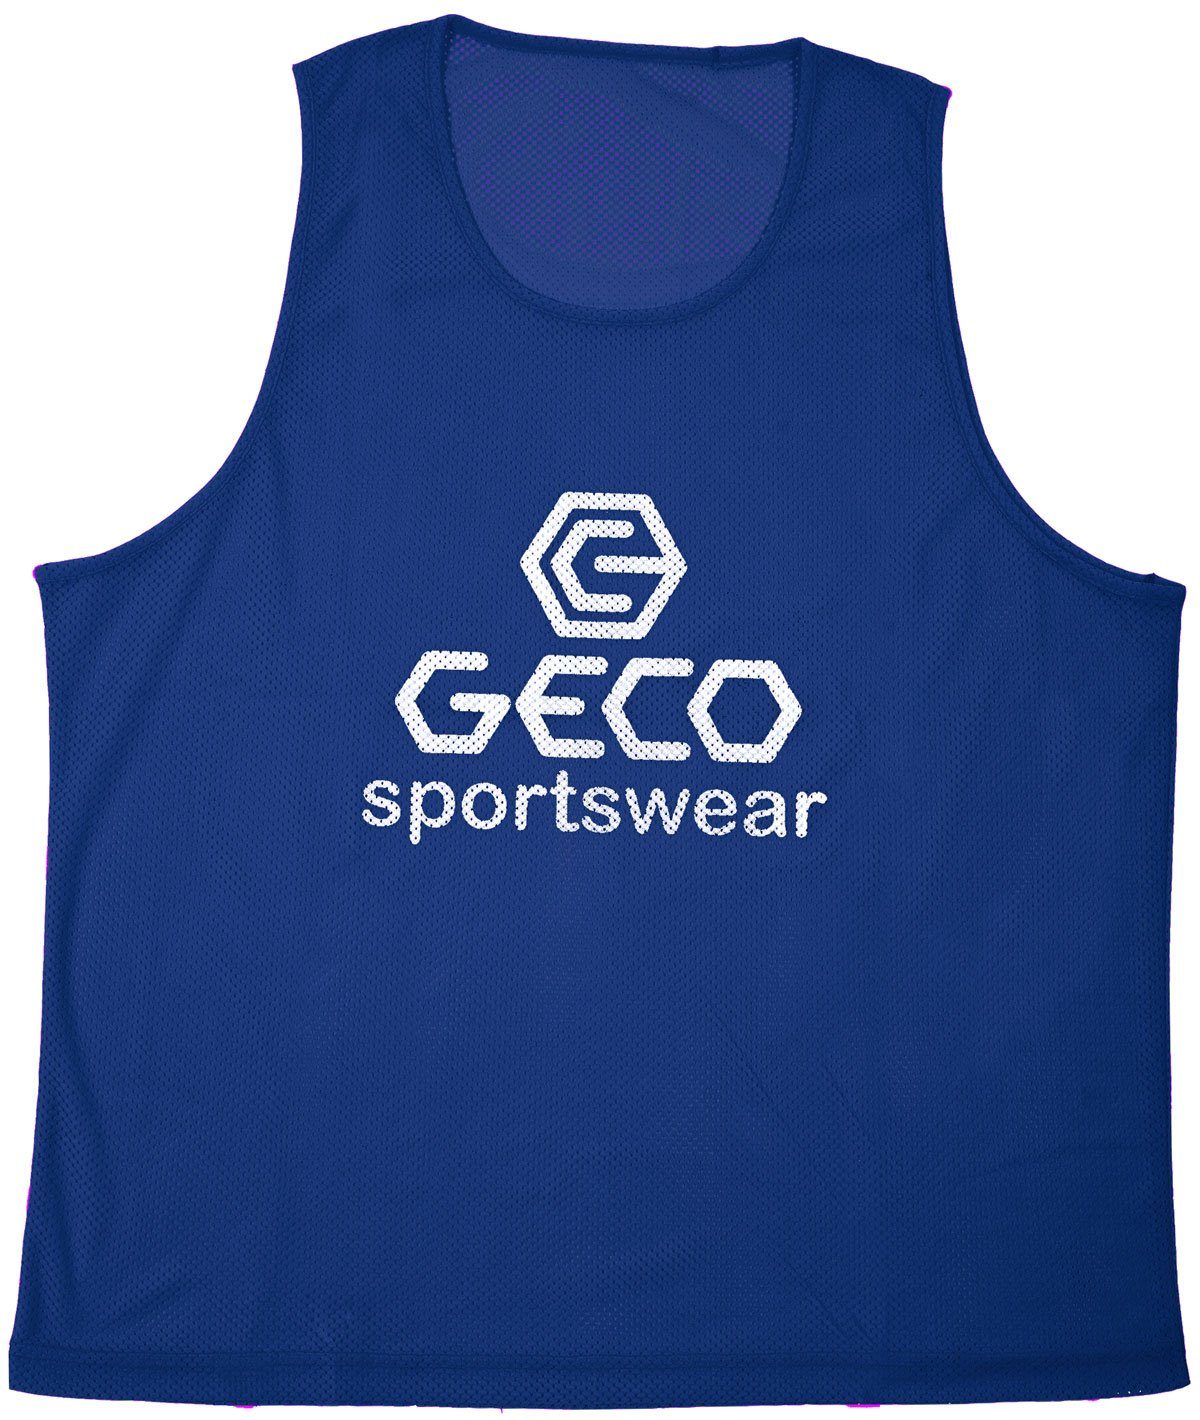 Sportswear Geco Farben Trainingsleibchen Markierungshemdchen Trainingsleibchen Neon Neon blau Geco